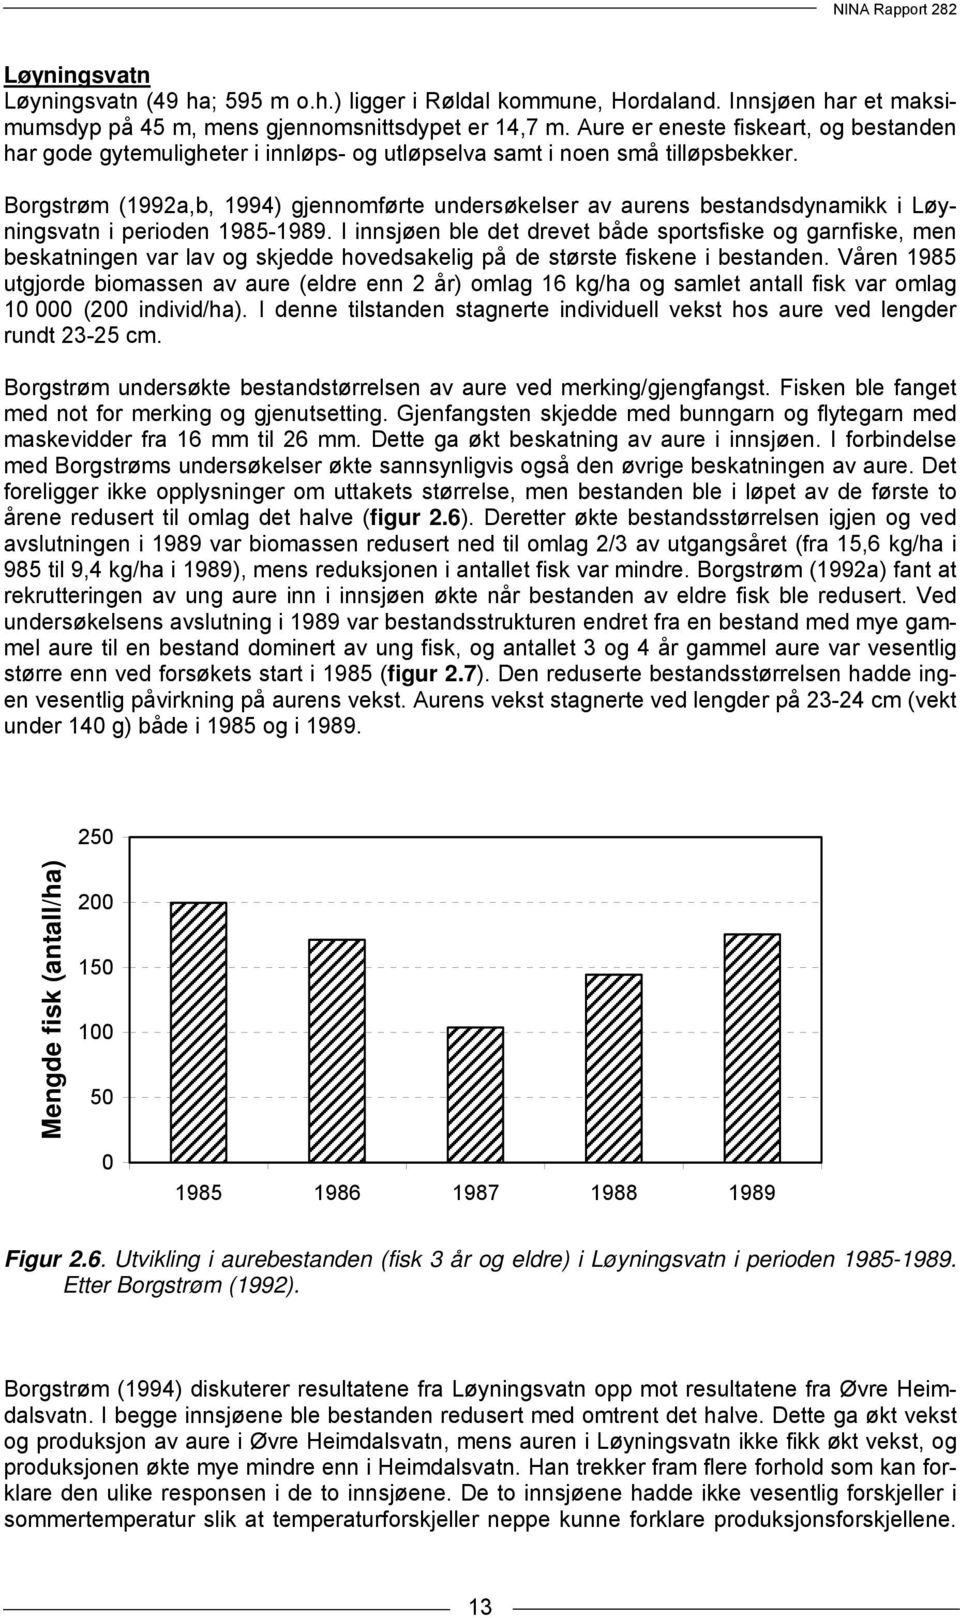 Borgstrøm (1992a,b, 1994) gjennomførte undersøkelser av aurens bestandsdynamikk i Løyningsvatn i perioden 1985-1989.